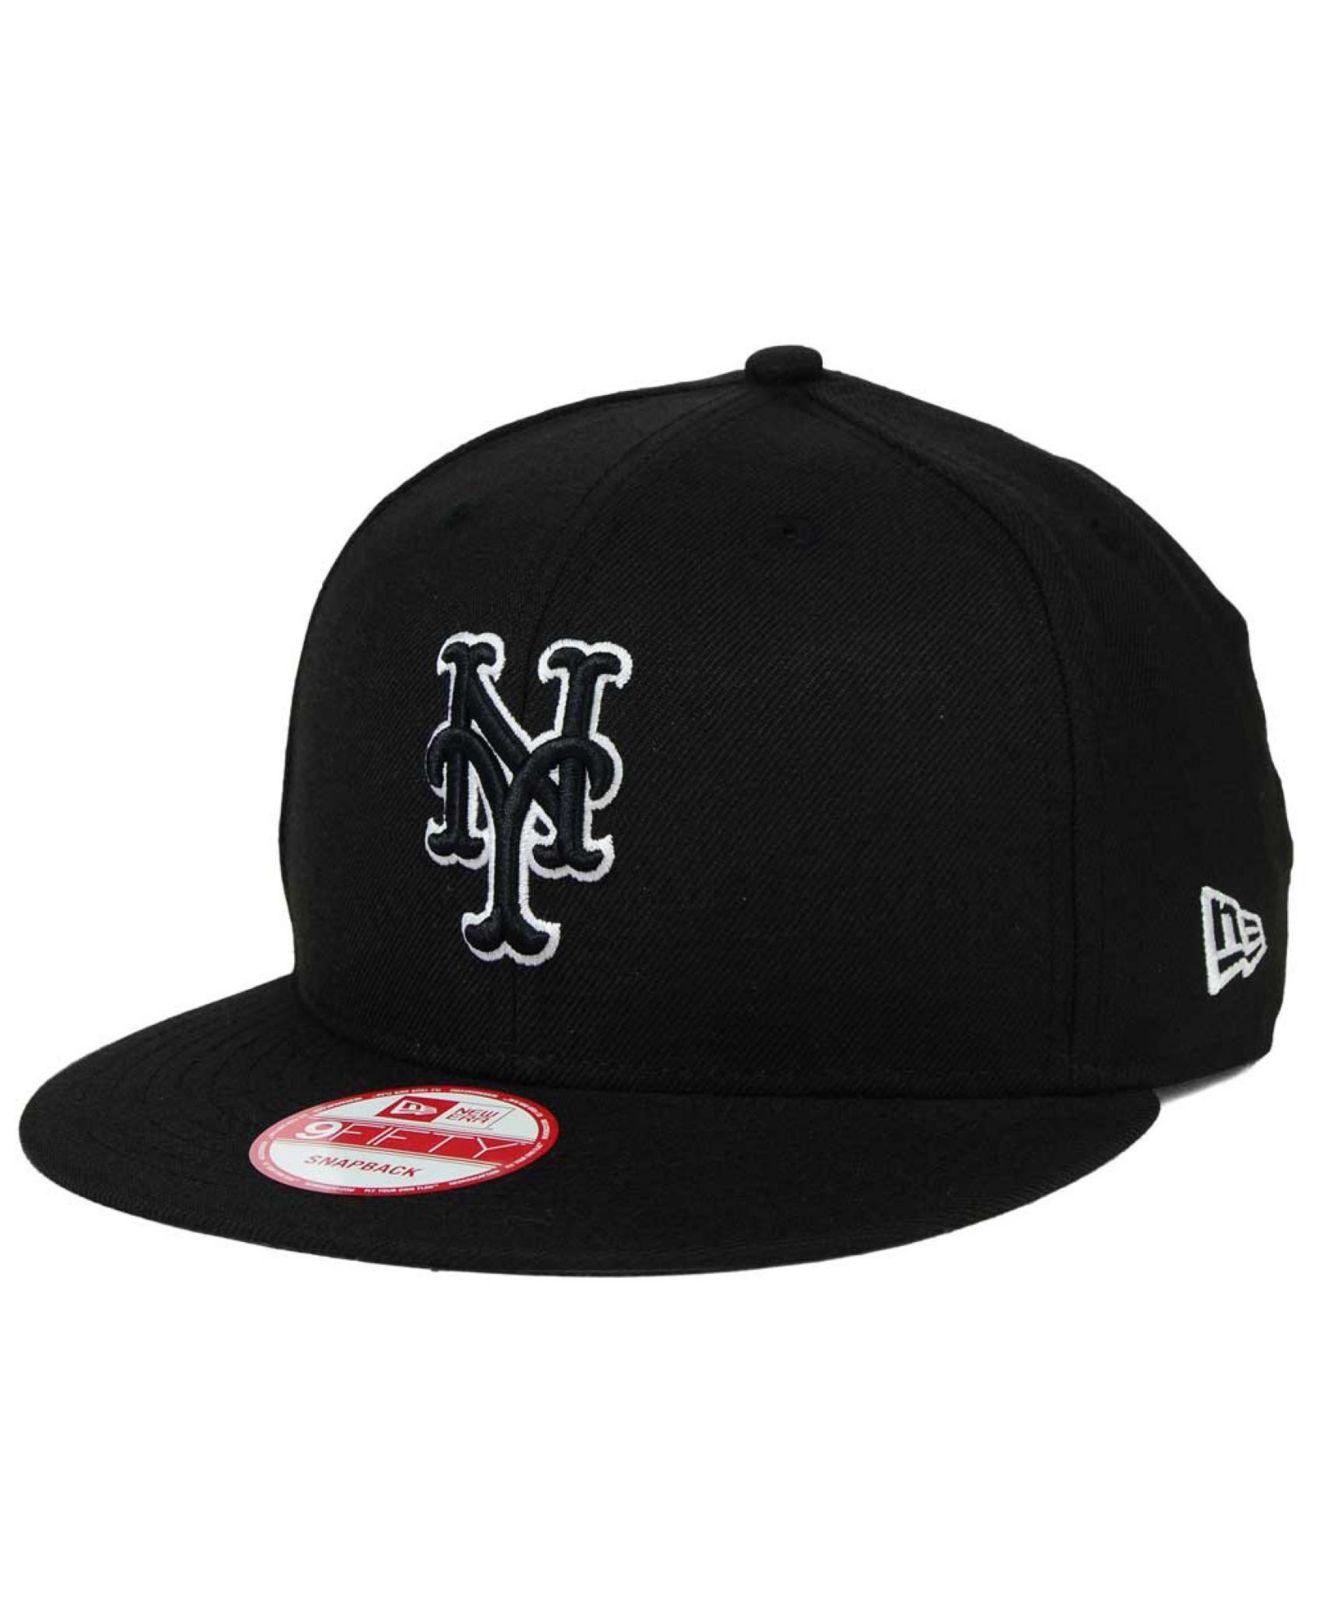 KTZ New York Mets Black White 9fifty Snapback Cap for Men - Lyst